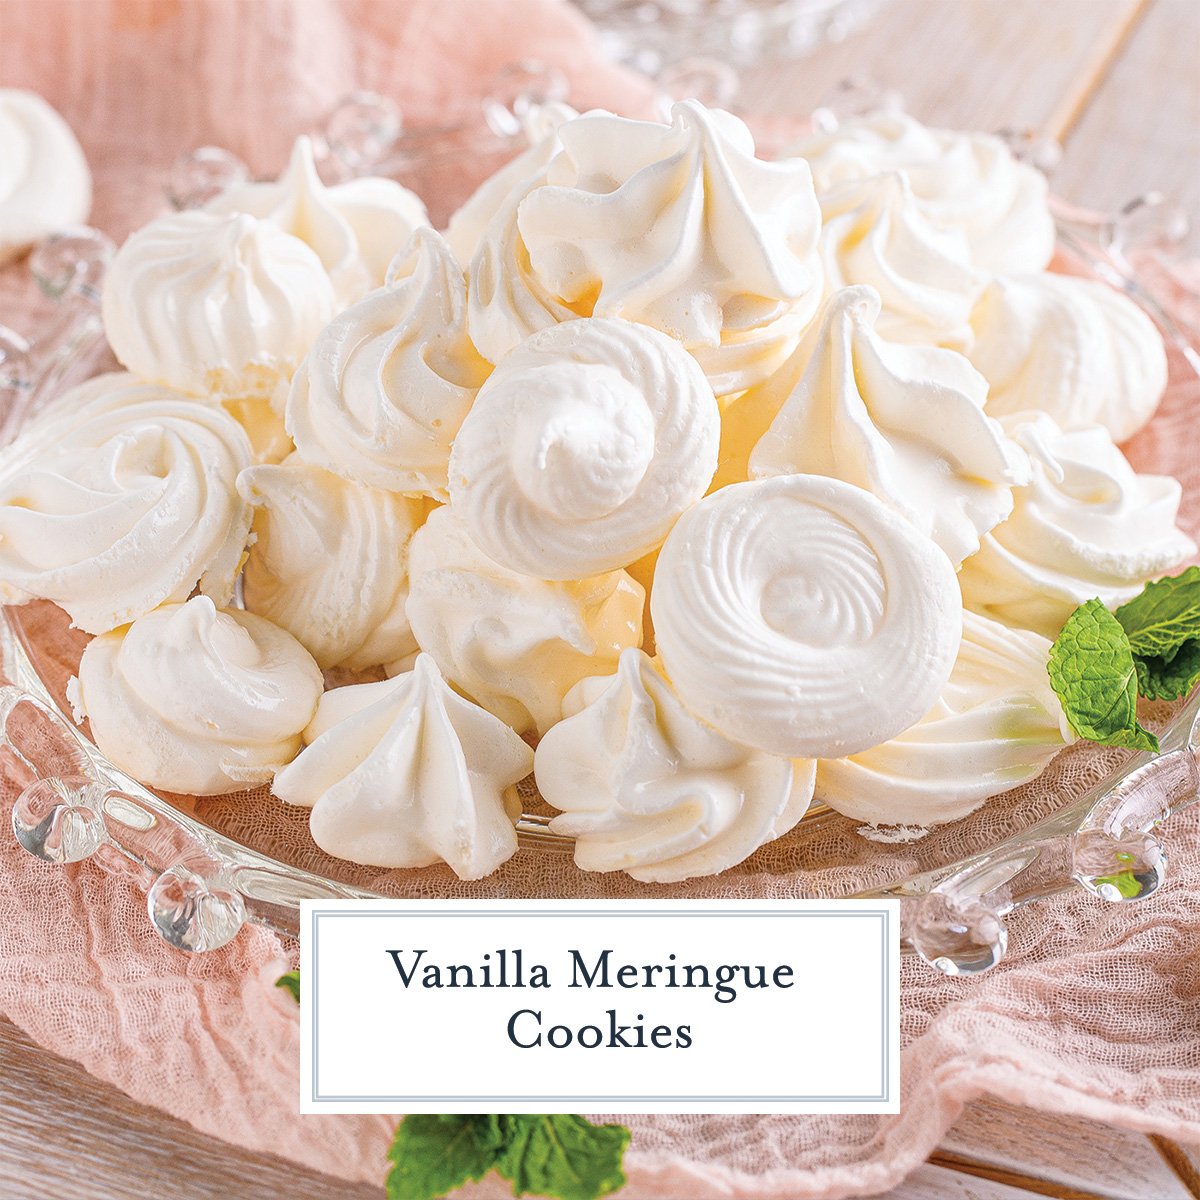 vanilla meringue cookies with text overlay